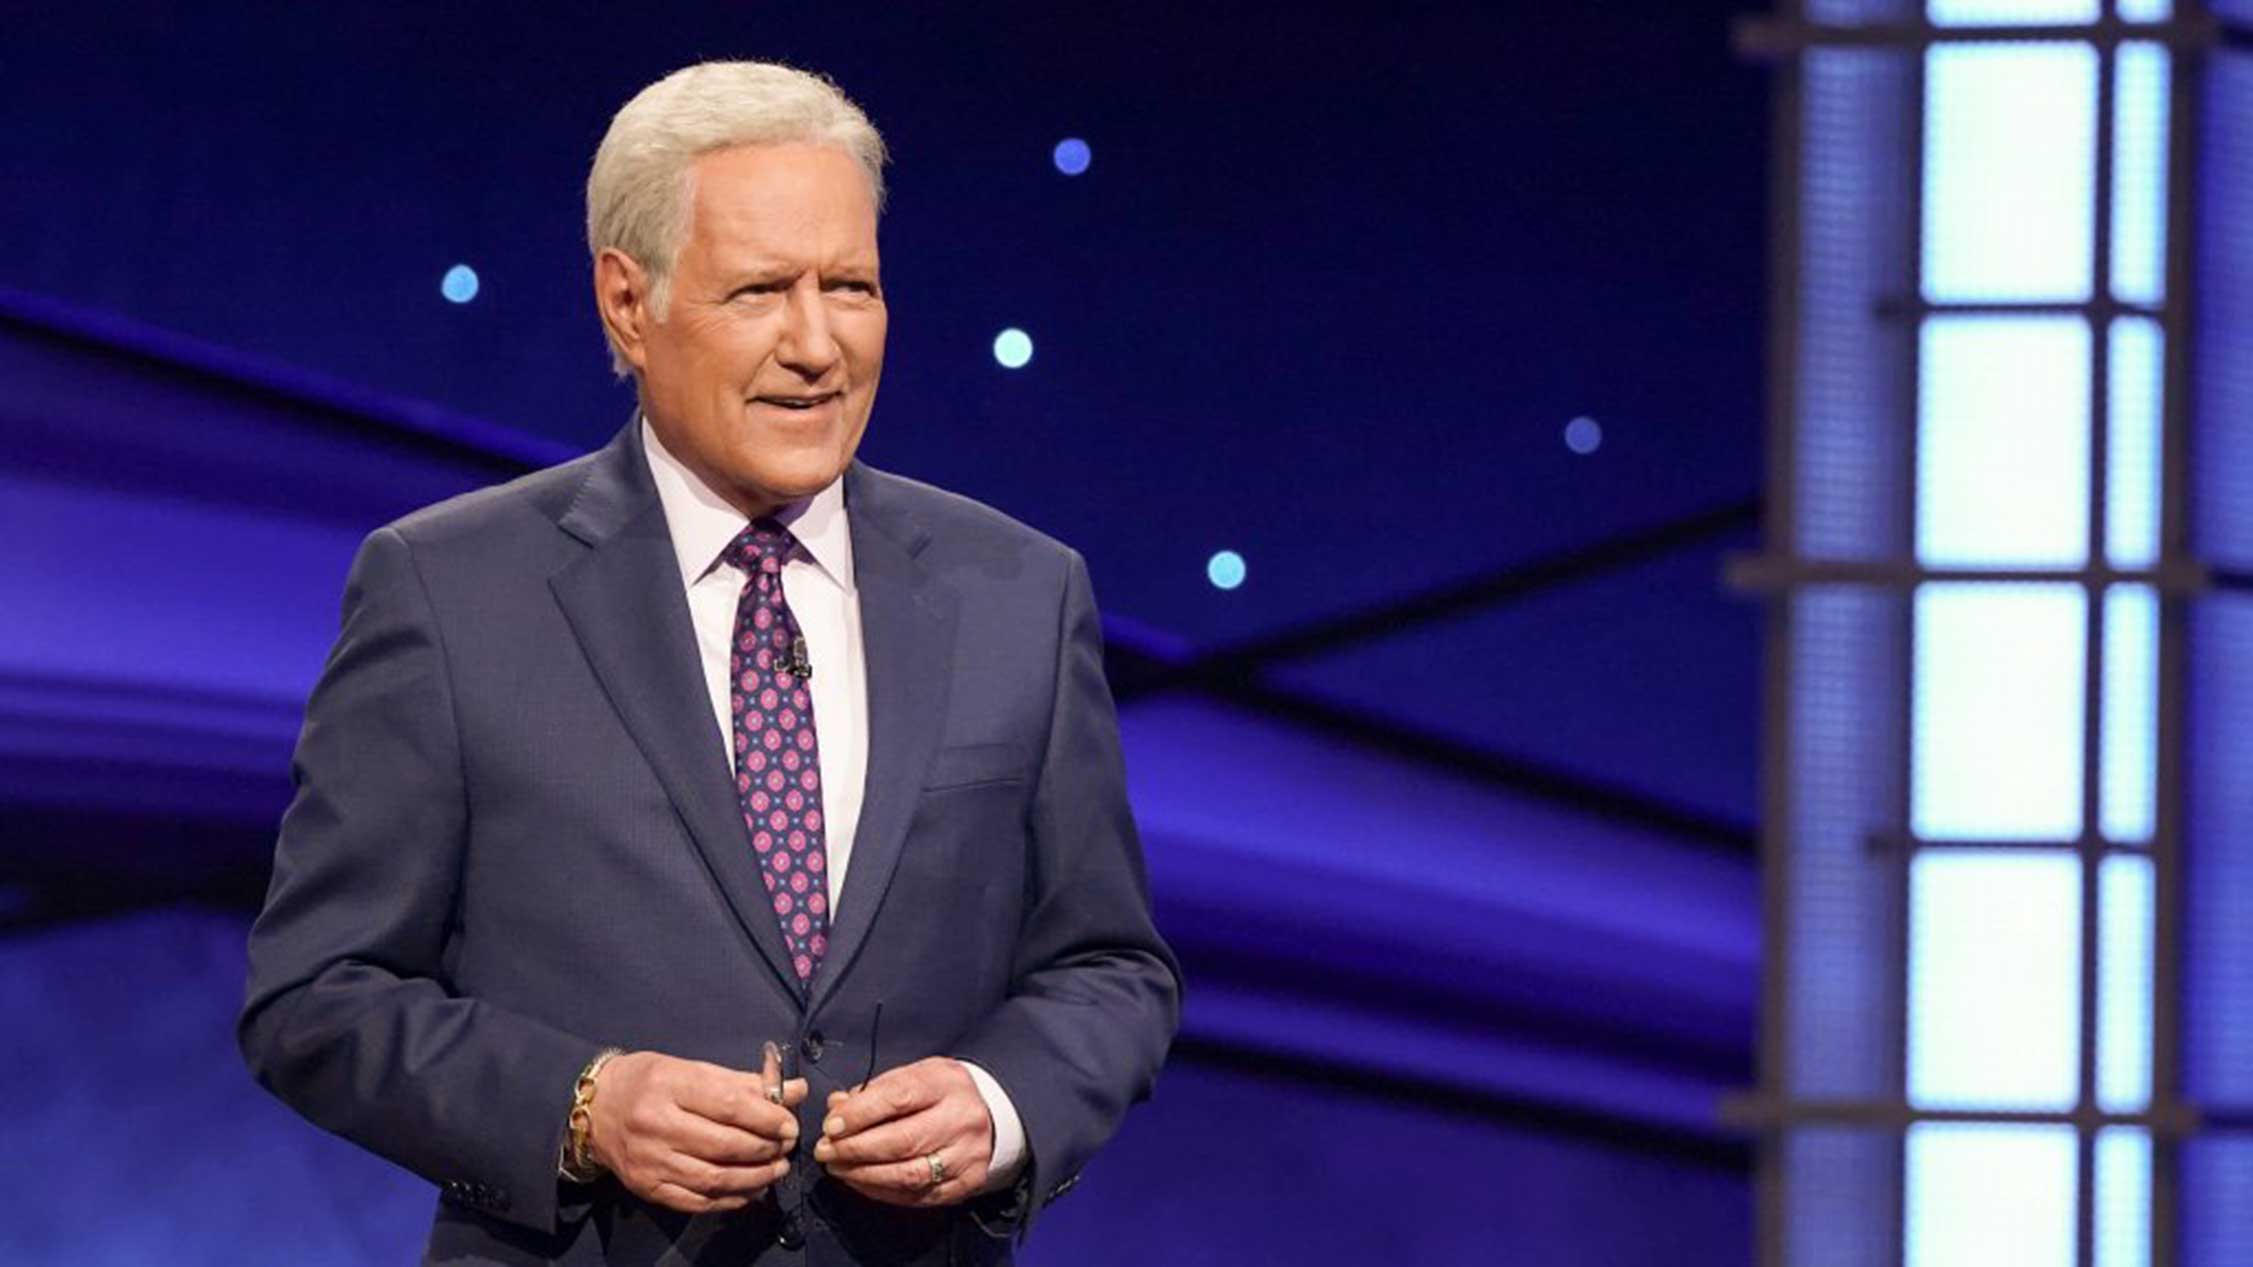 Mike Richards, Mayim Bialik to split hosting duties on Jeopardy